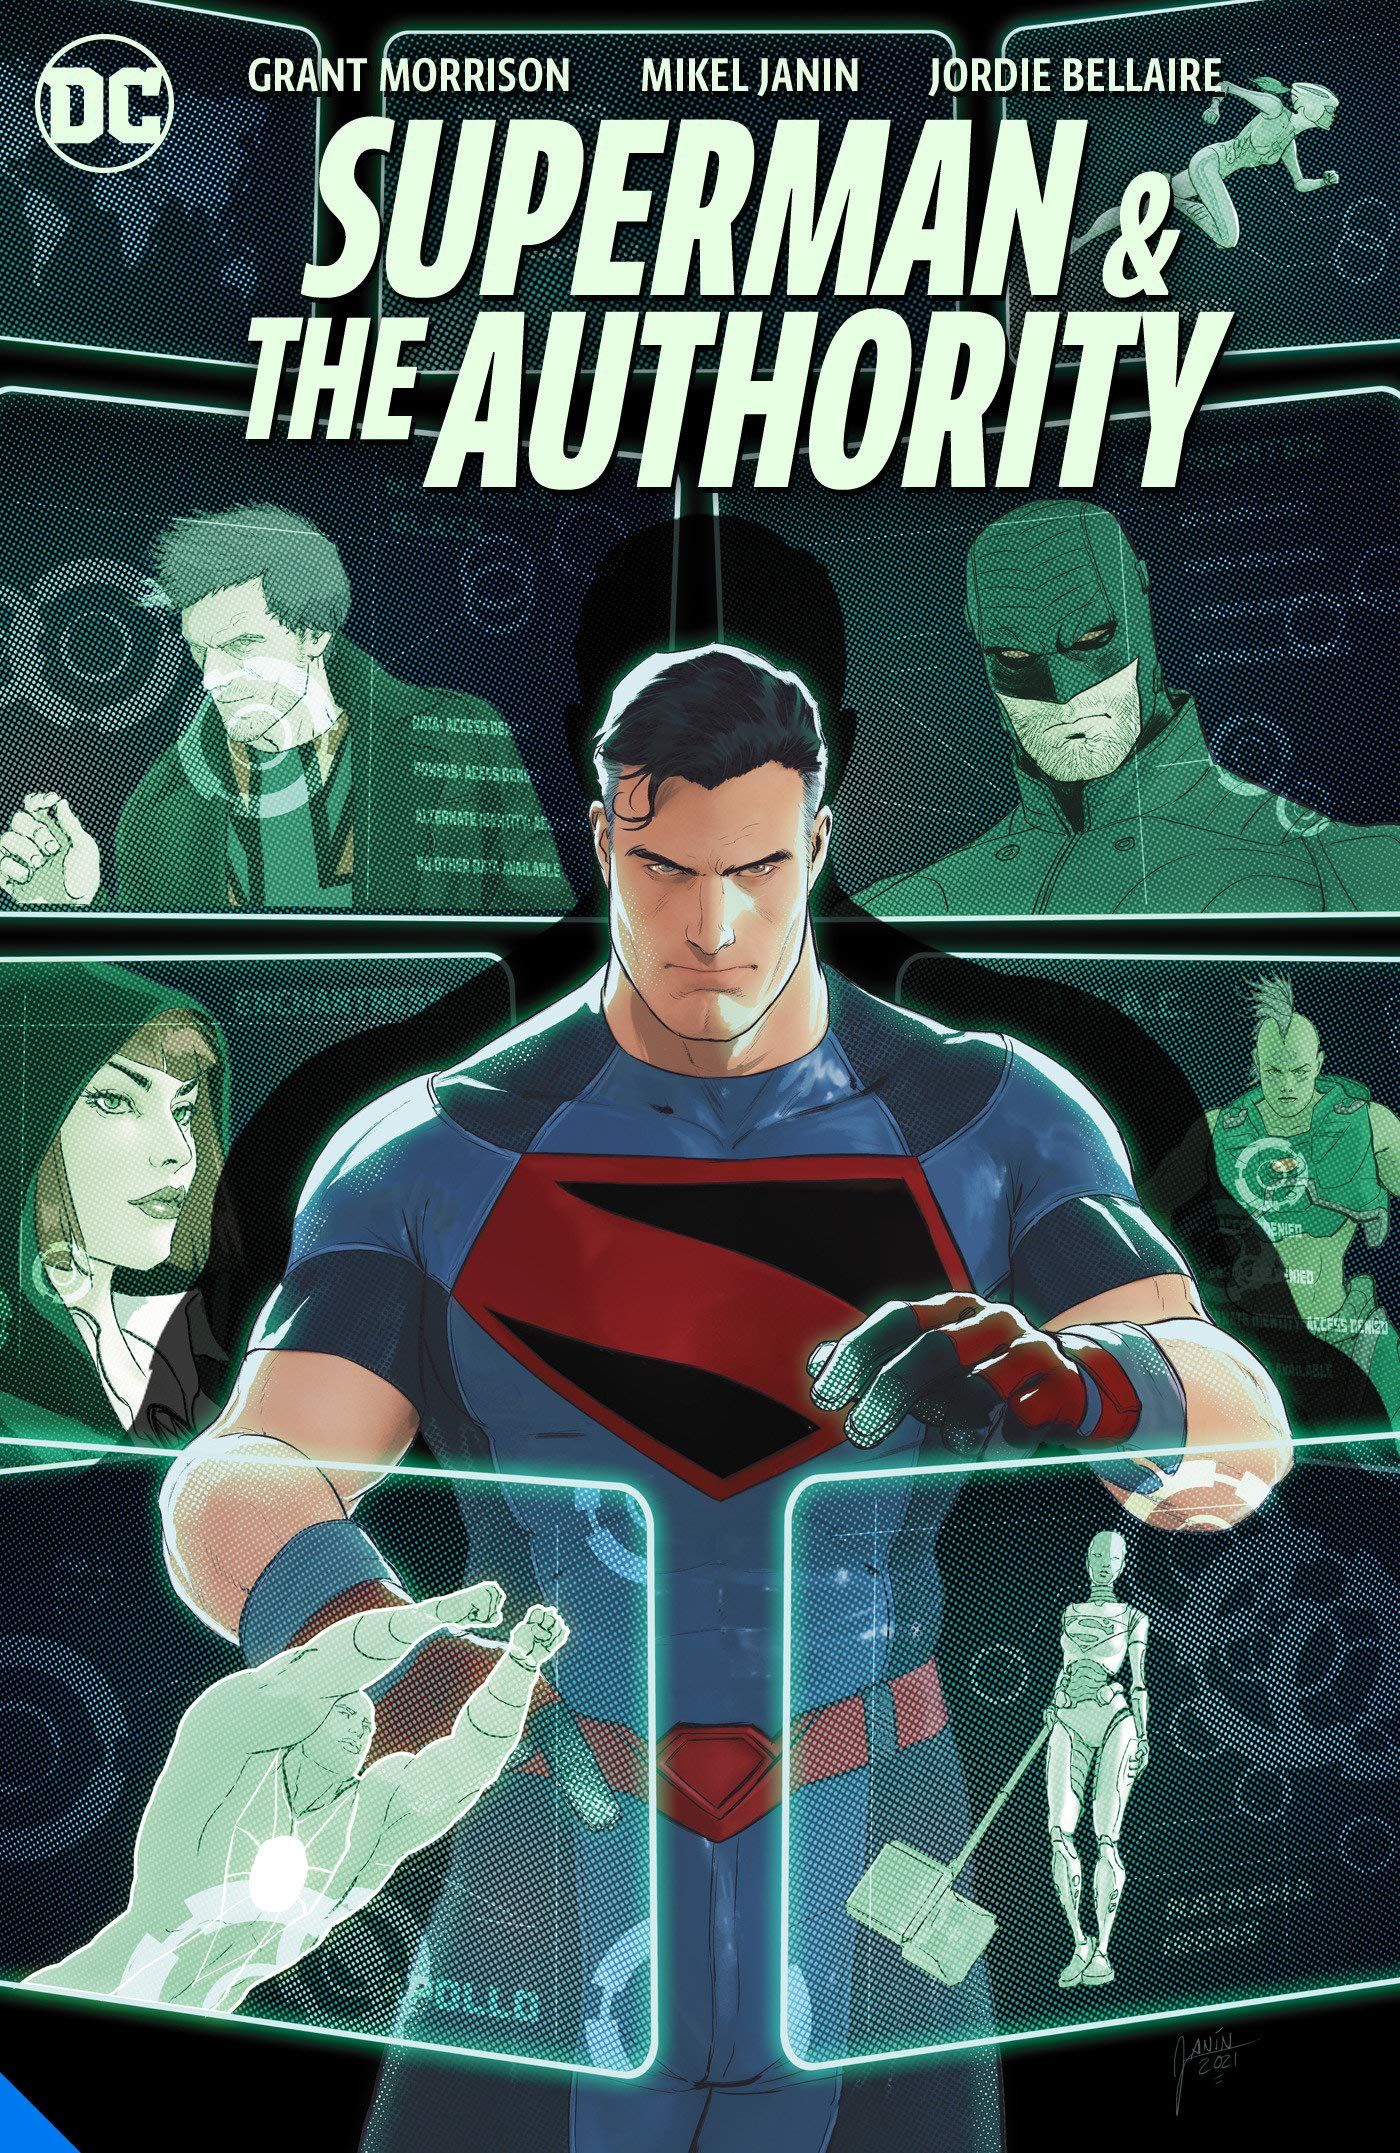 Superman and the Authority: Grant Morrison provoca um super-herói grisalho 1